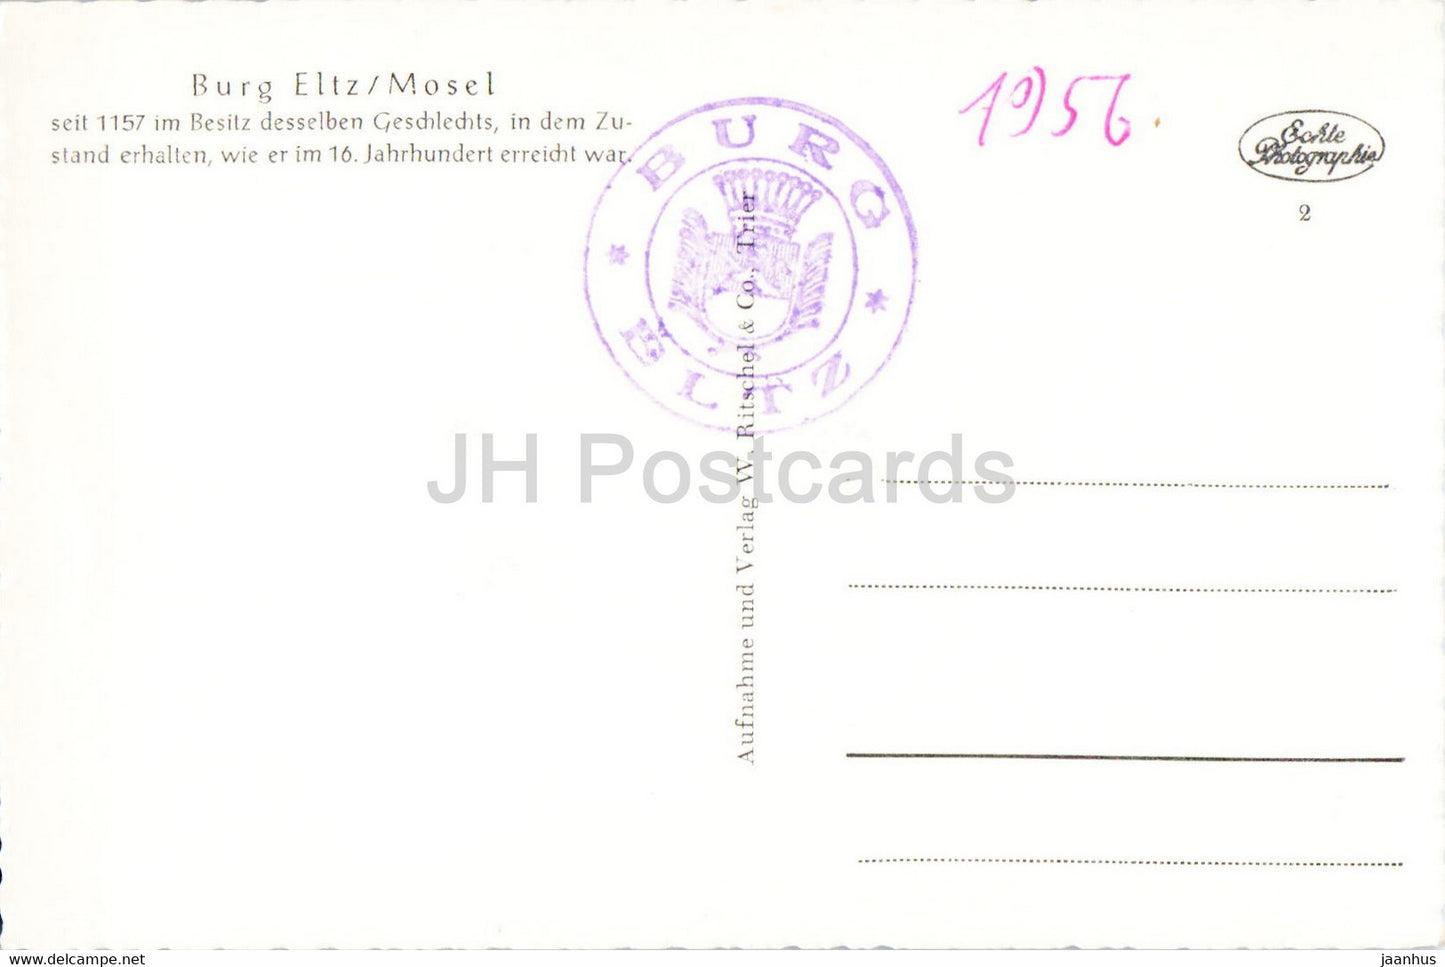 Burg Eltz - Mosel - castle - old postcard - Germany - unused